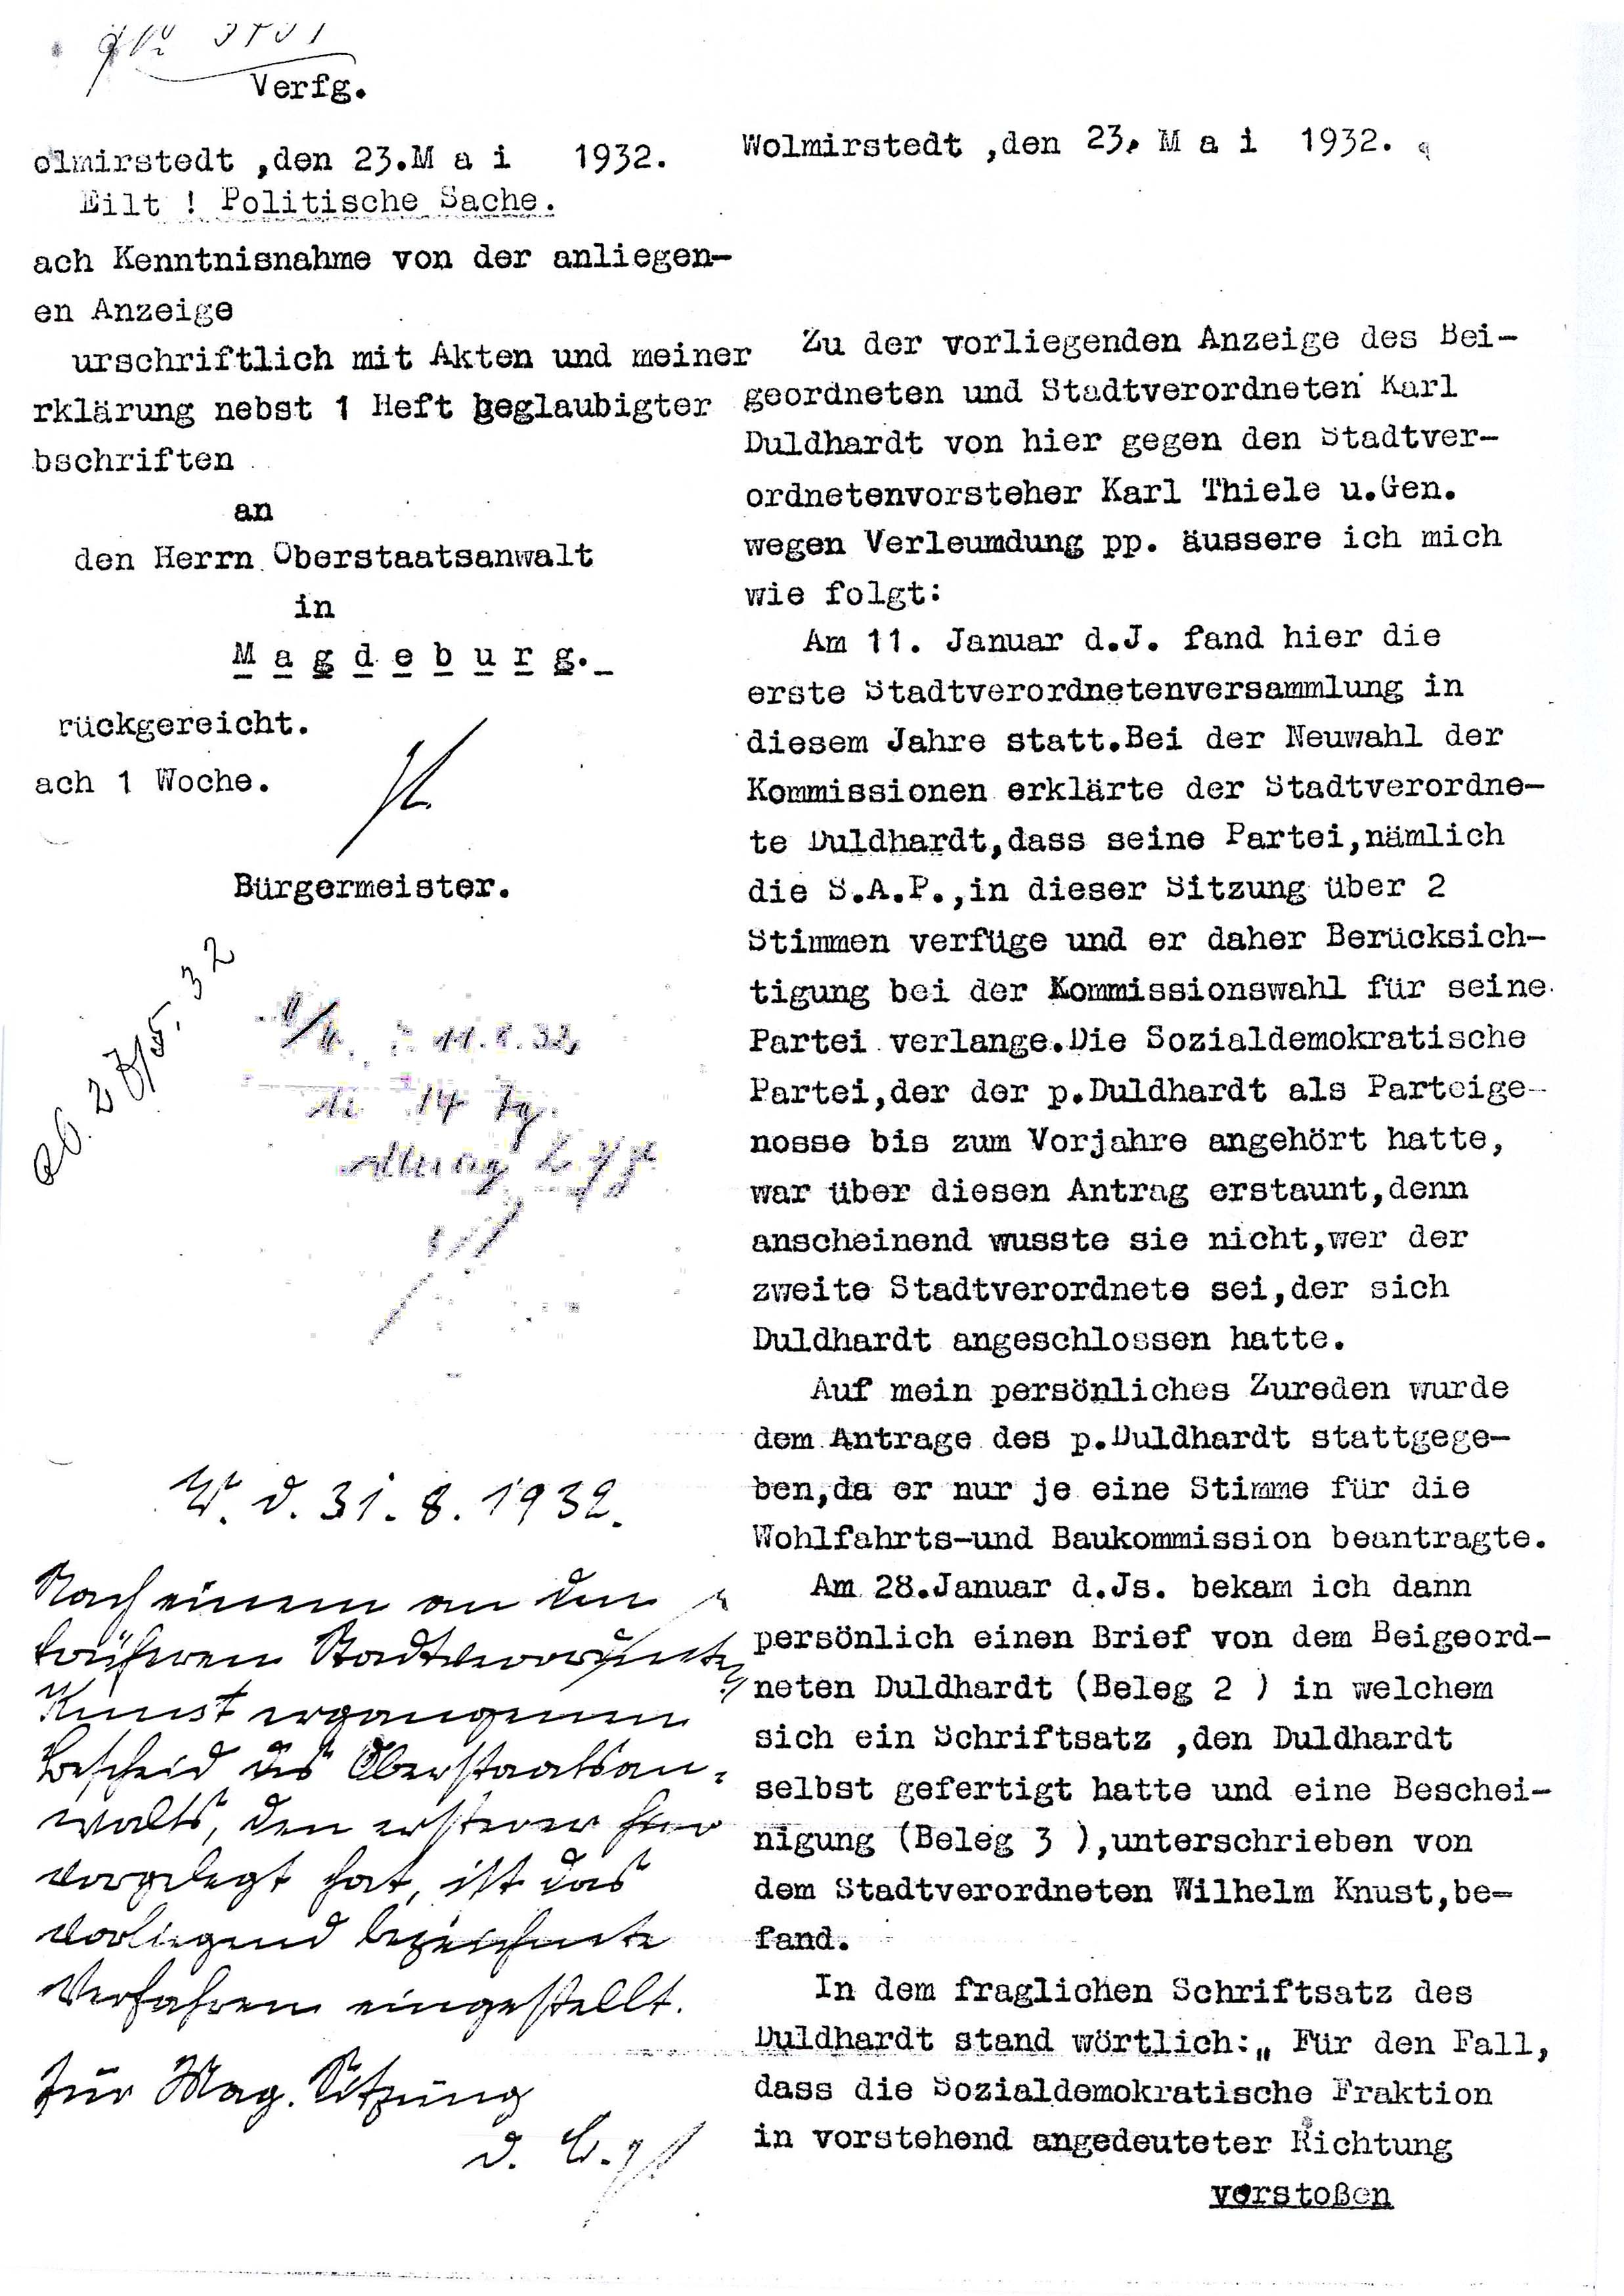 Kopie Stellungnahme Friedrich Haselhorst zum Verfahren wegen Verleumdung von Karl Duldhardt (Museum Wolmirstedt RR-F)